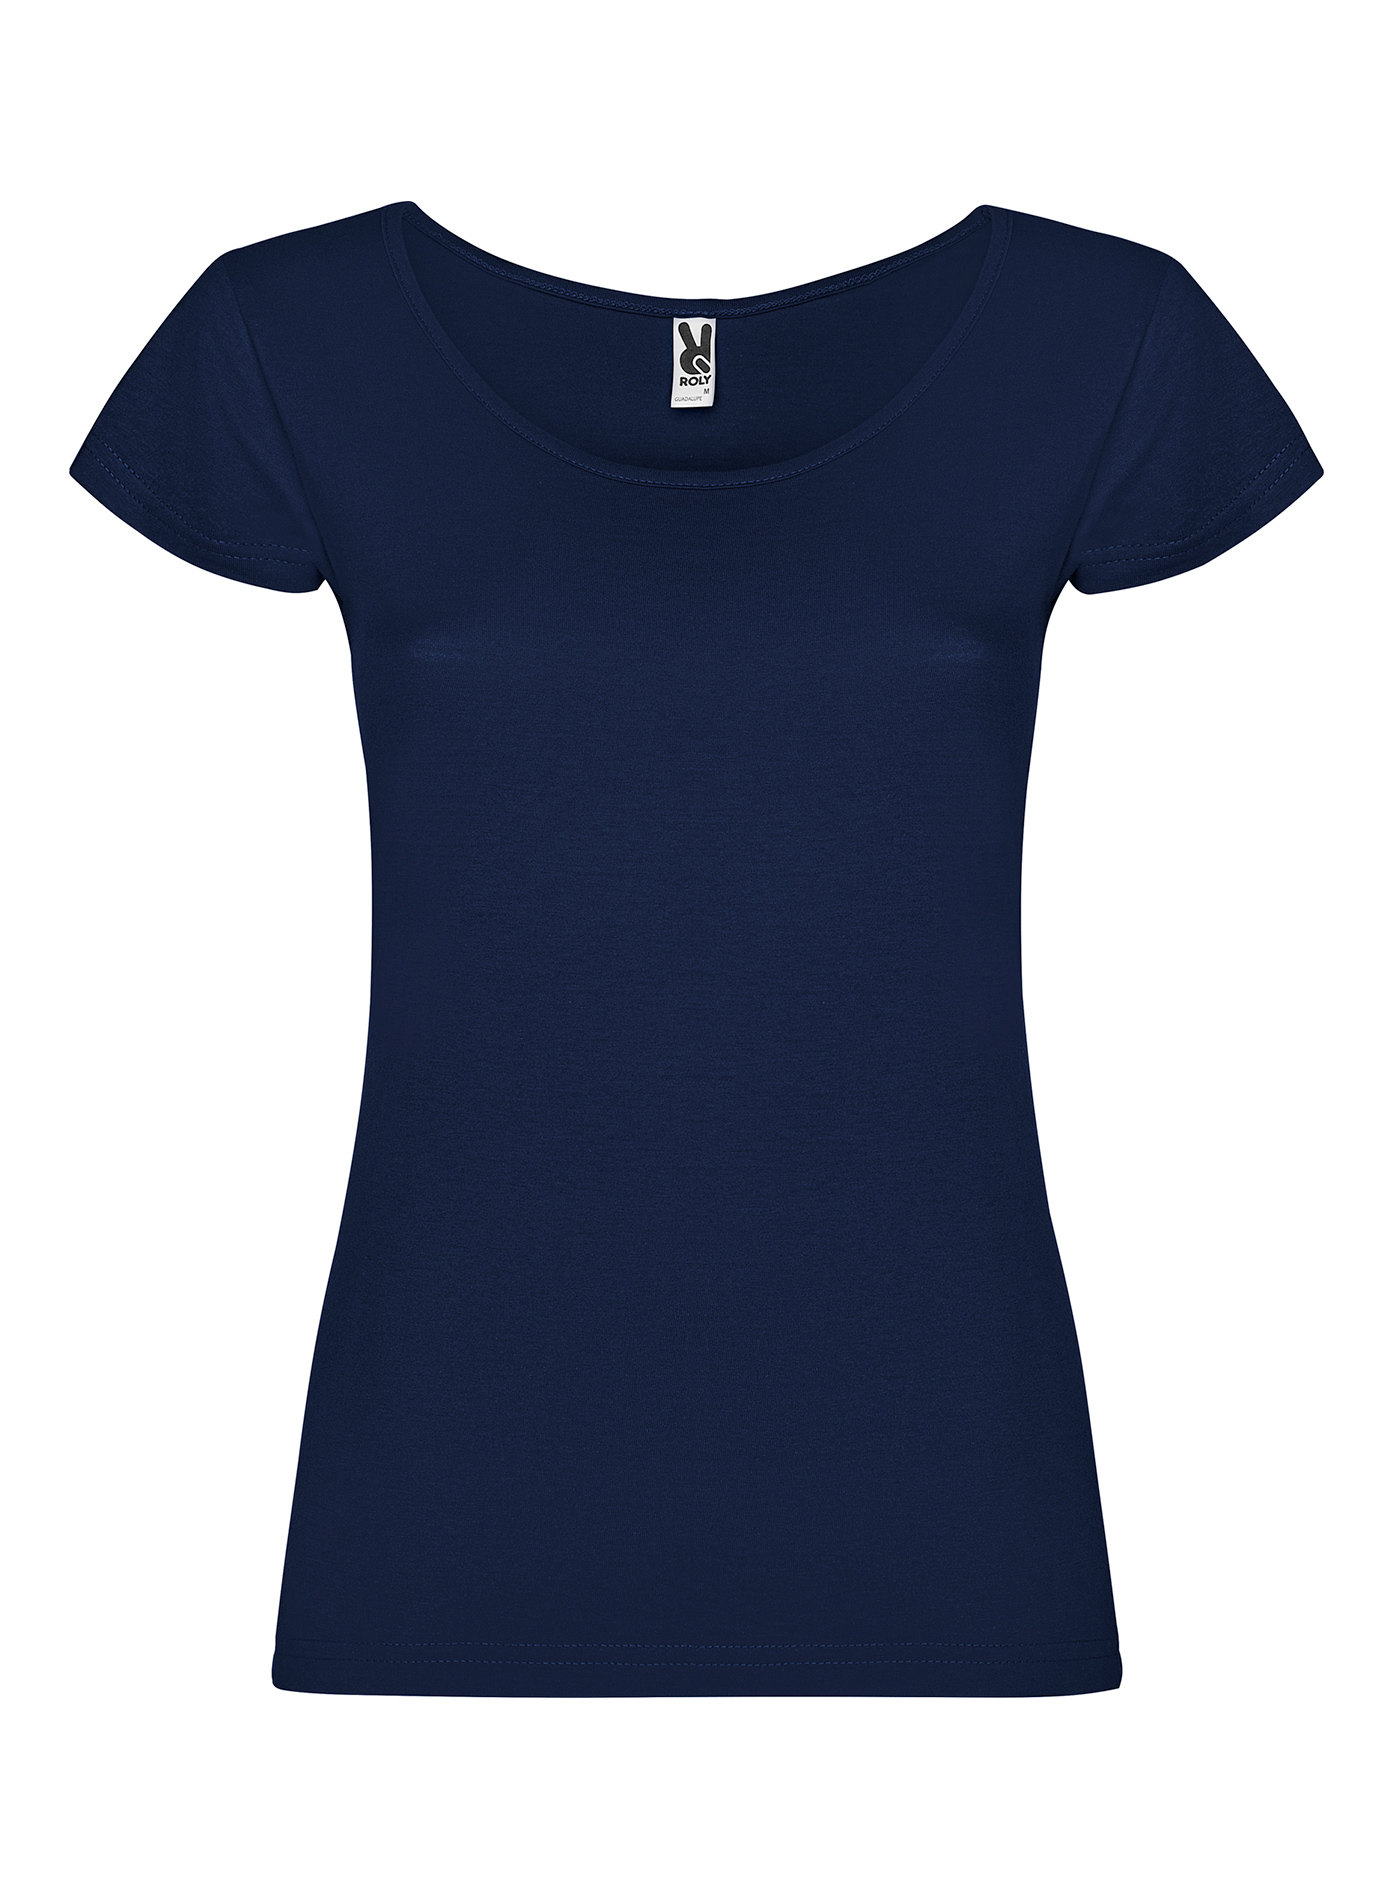 Dámské tričko Roly Guadalupe - Námořnická modrá M